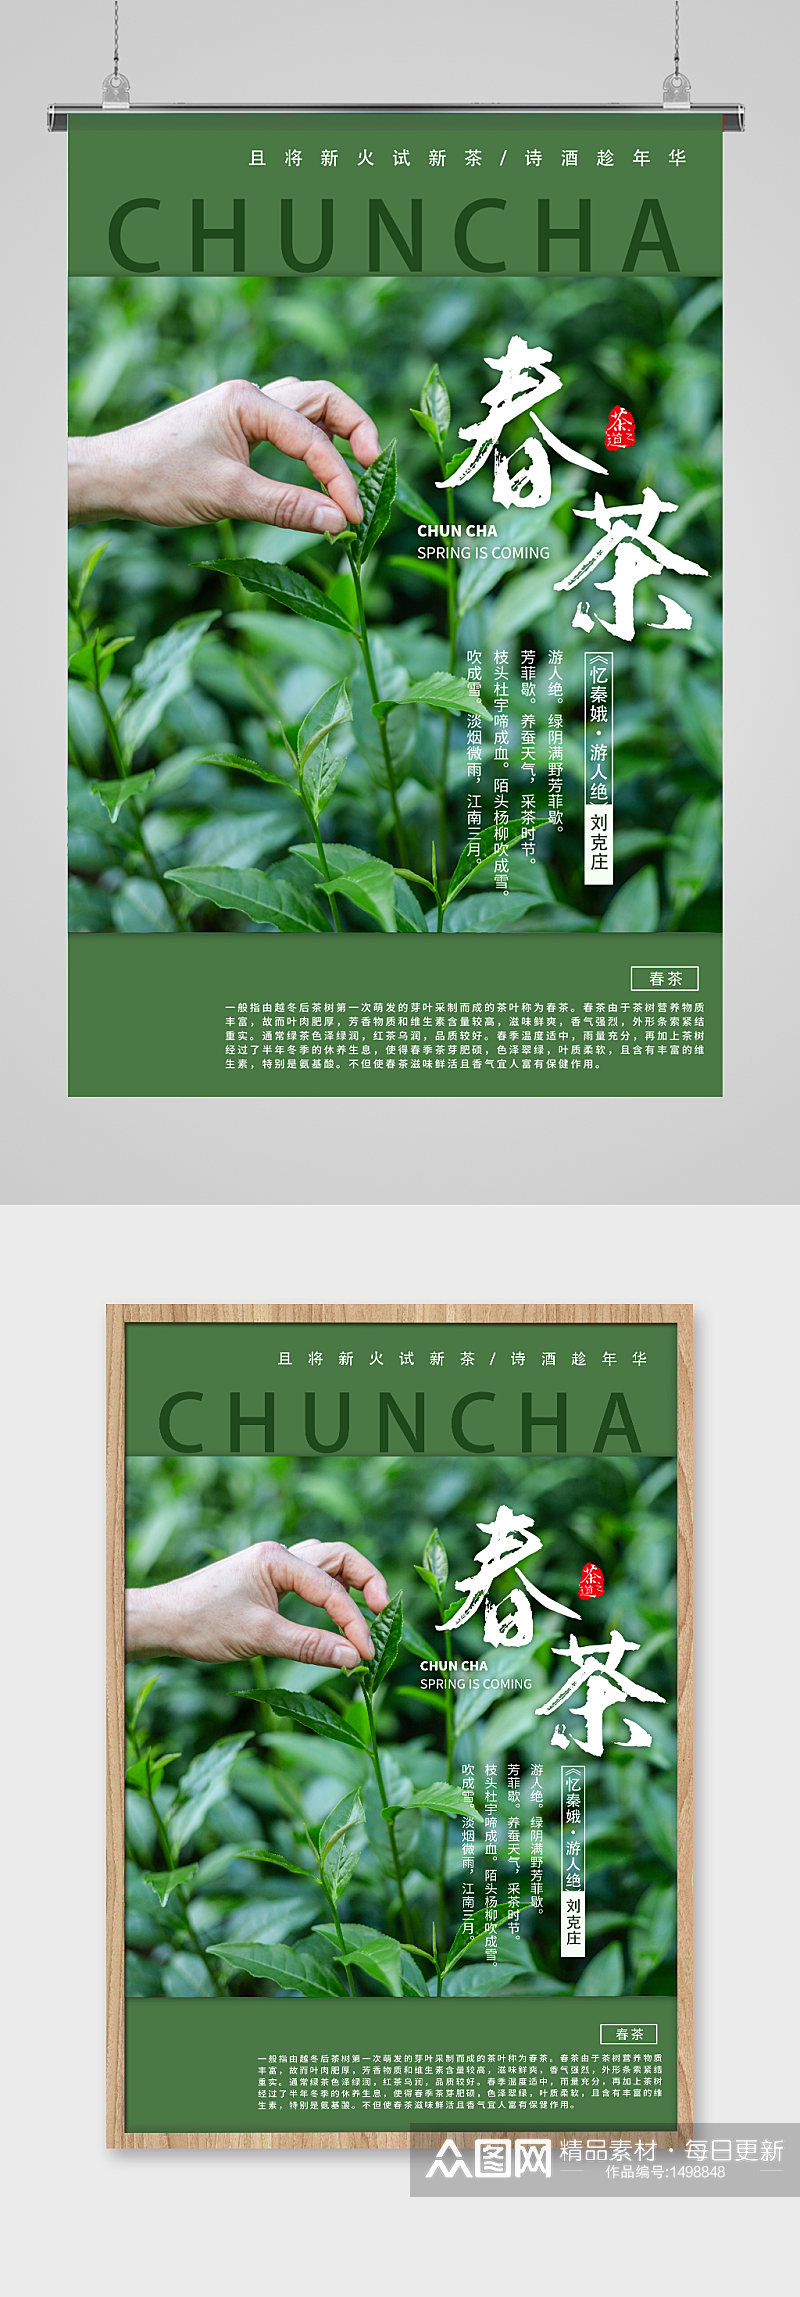 春茶上新茶叶绿色创意海报素材